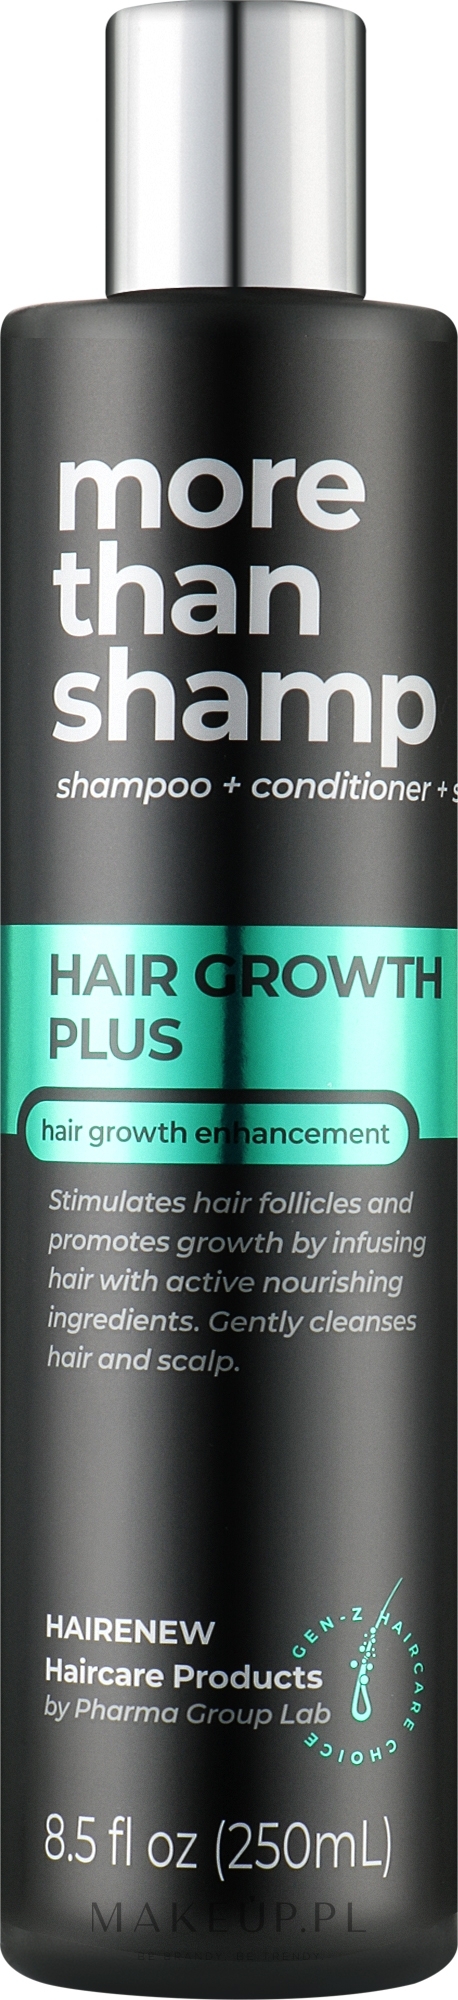 hair growth szampon wizaż